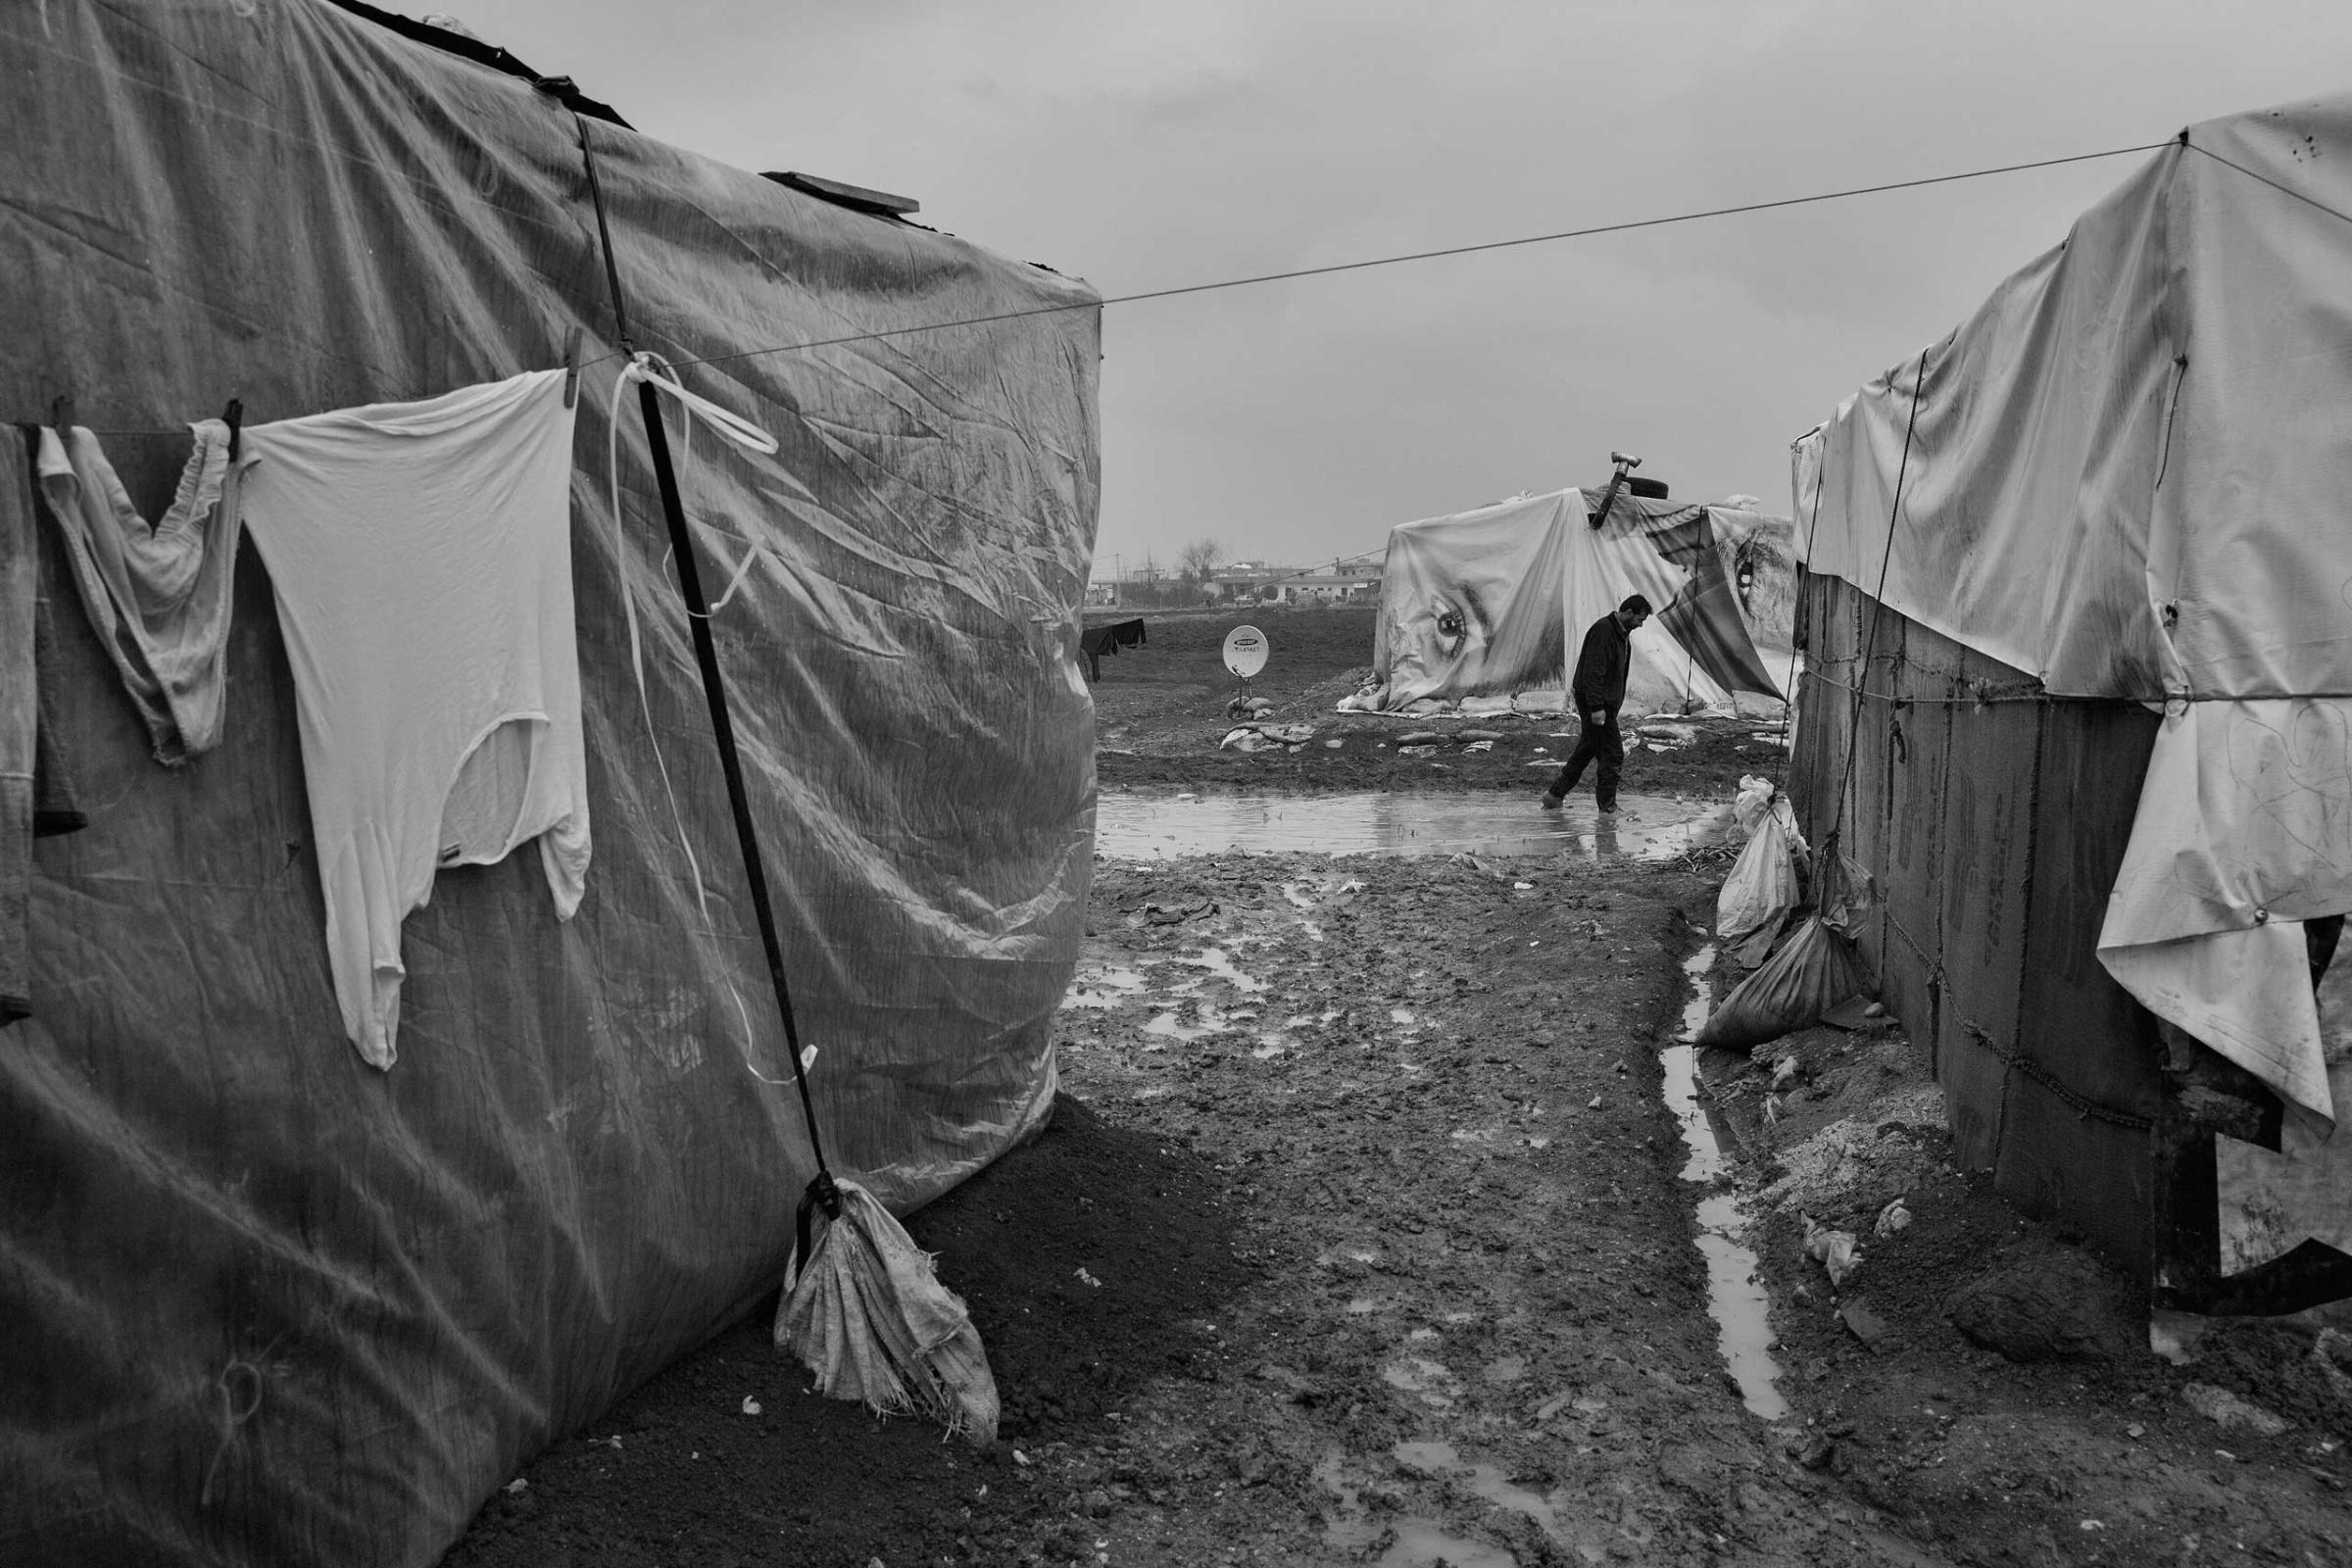 January 2014. Bekaa Valley, Lebanon. Syrian refugees in Lebanon's informal settlements.